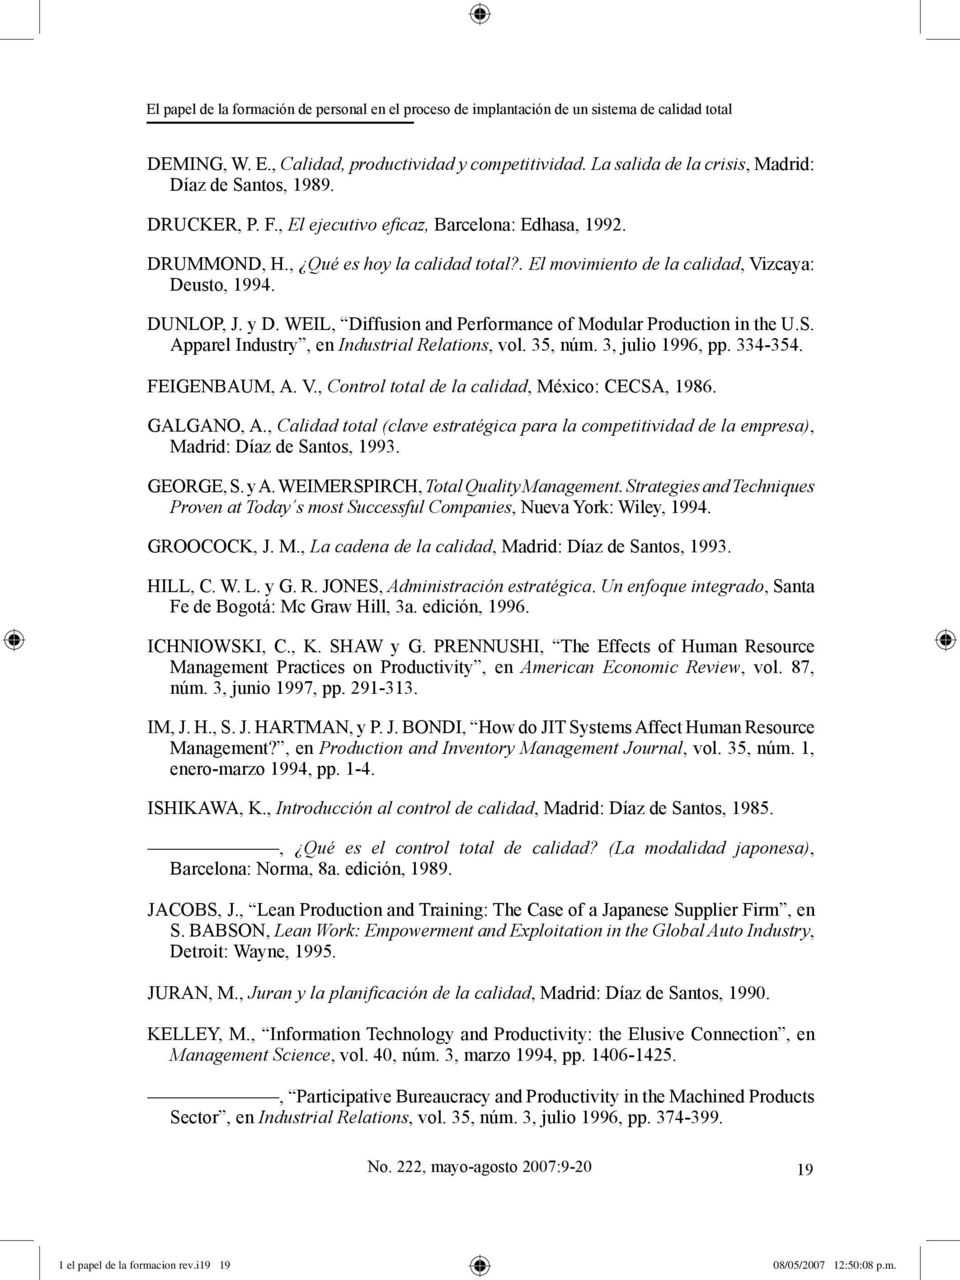 . El movimiento de la calidad, Vizcaya: Deusto, 1994. DUNLOP, J. y D. WEIL, Diffusion and Performance of Modular Production in the U.S. Apparel Industry, en Industrial Relations, vol. 35, núm.